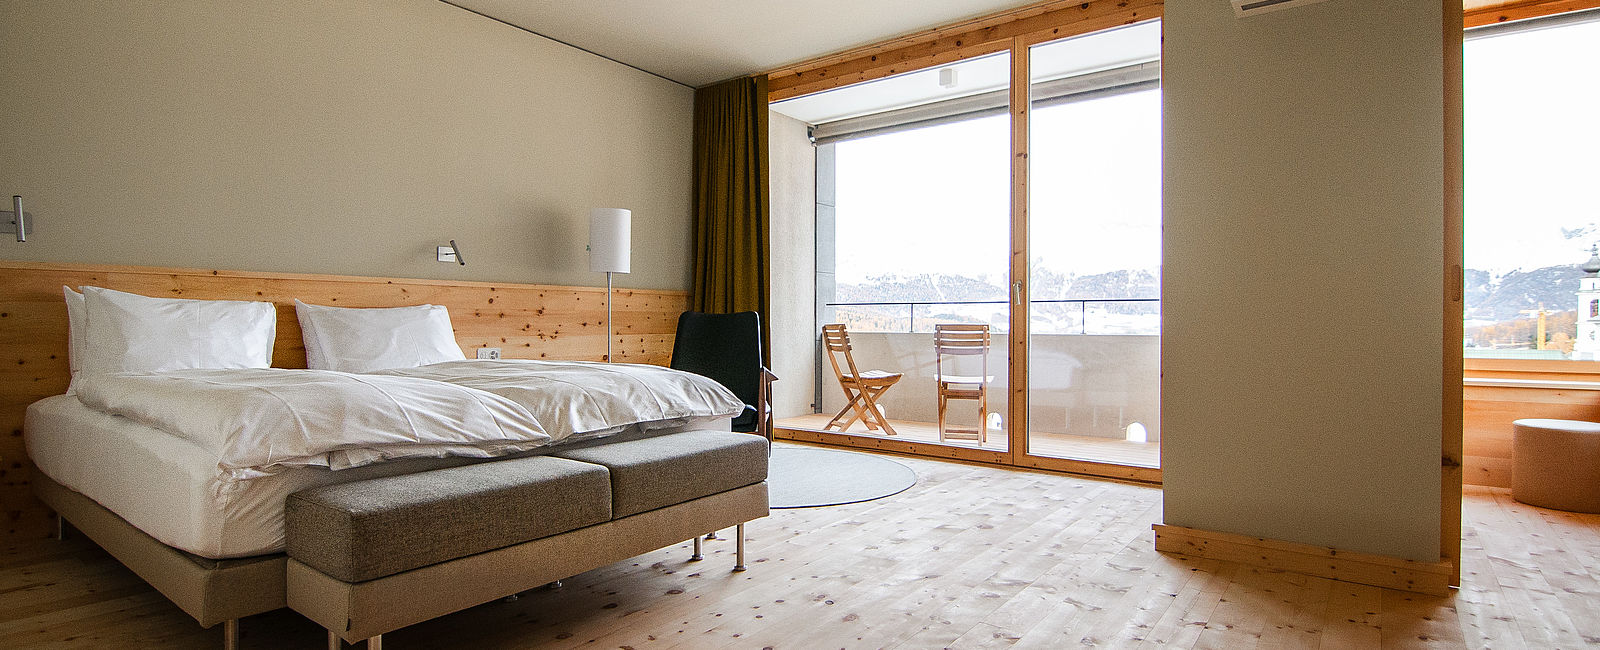 HOTELERÖFFNUNG NEWS
 Architektur Meets Alpen 
